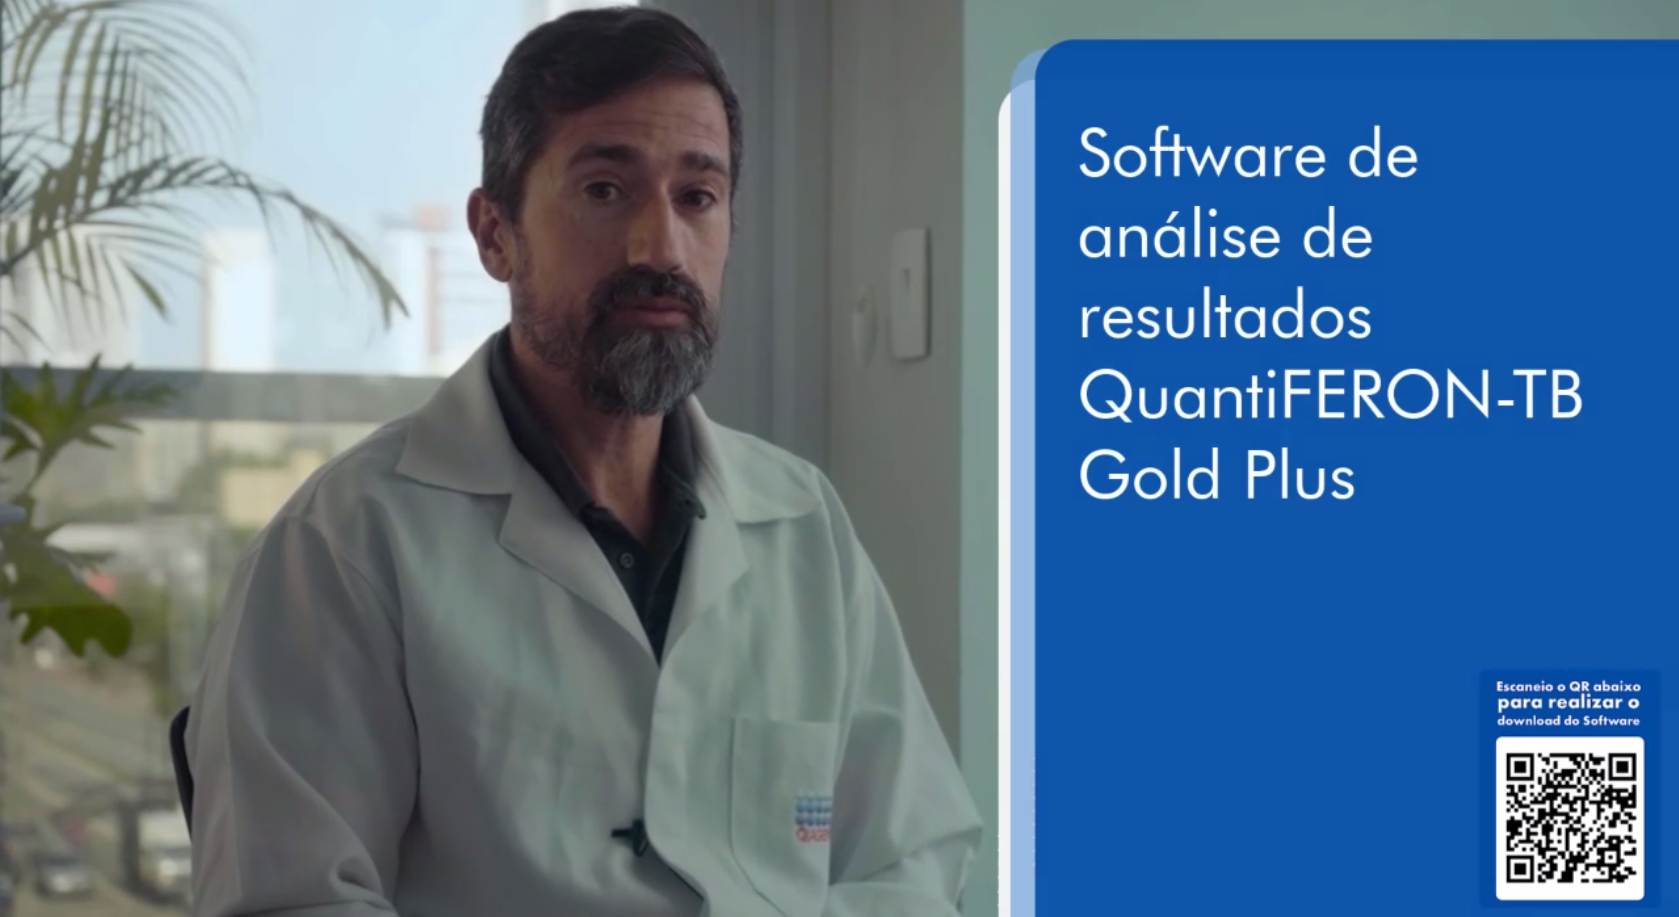 Aula 03 - Vídeo demonstrativo Interpretação dos resultados - Software de análise QuantiFERON-TB Gold Plus.mp4